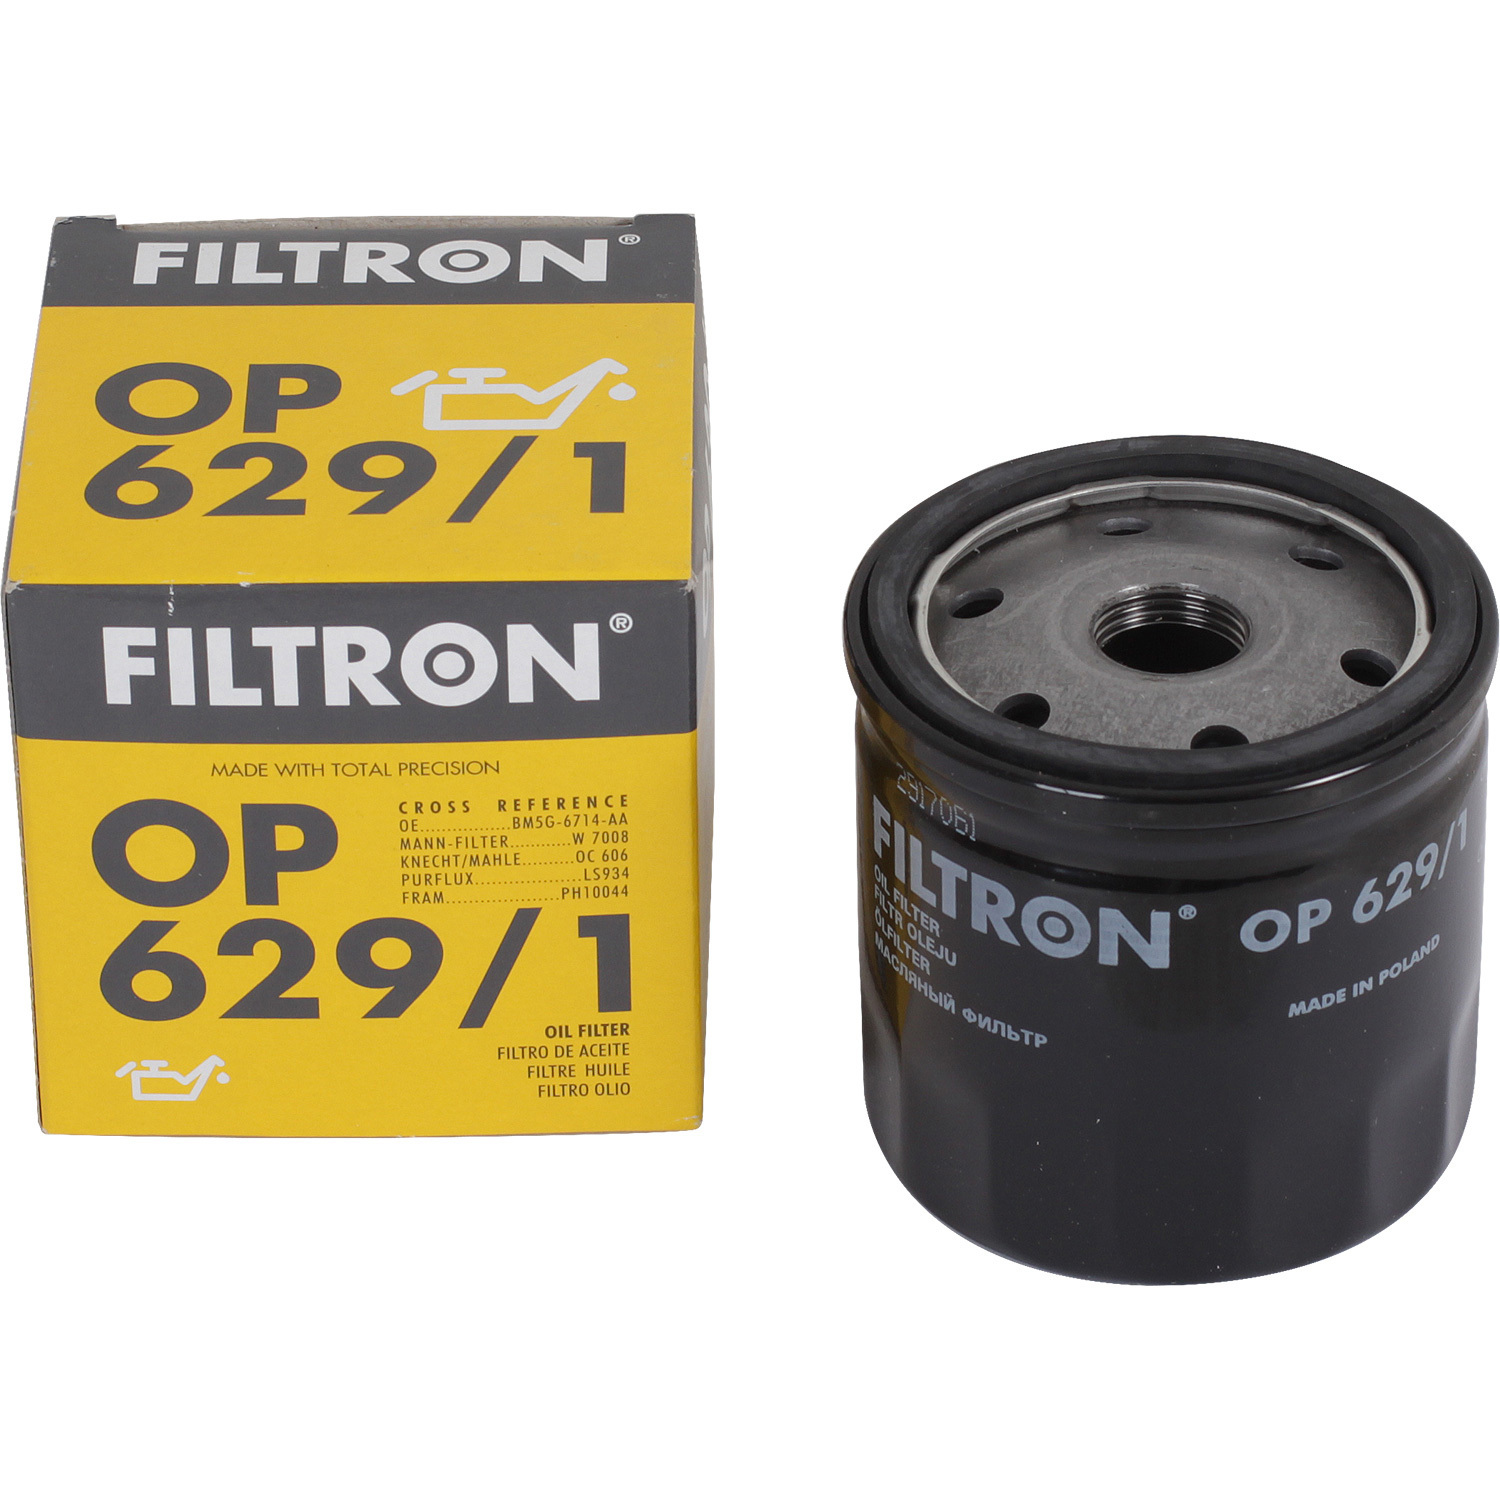 фильтры filtron фильтр масляный filtron oe673 Фильтры Filtron Фильтр масляный Filtron OP6291